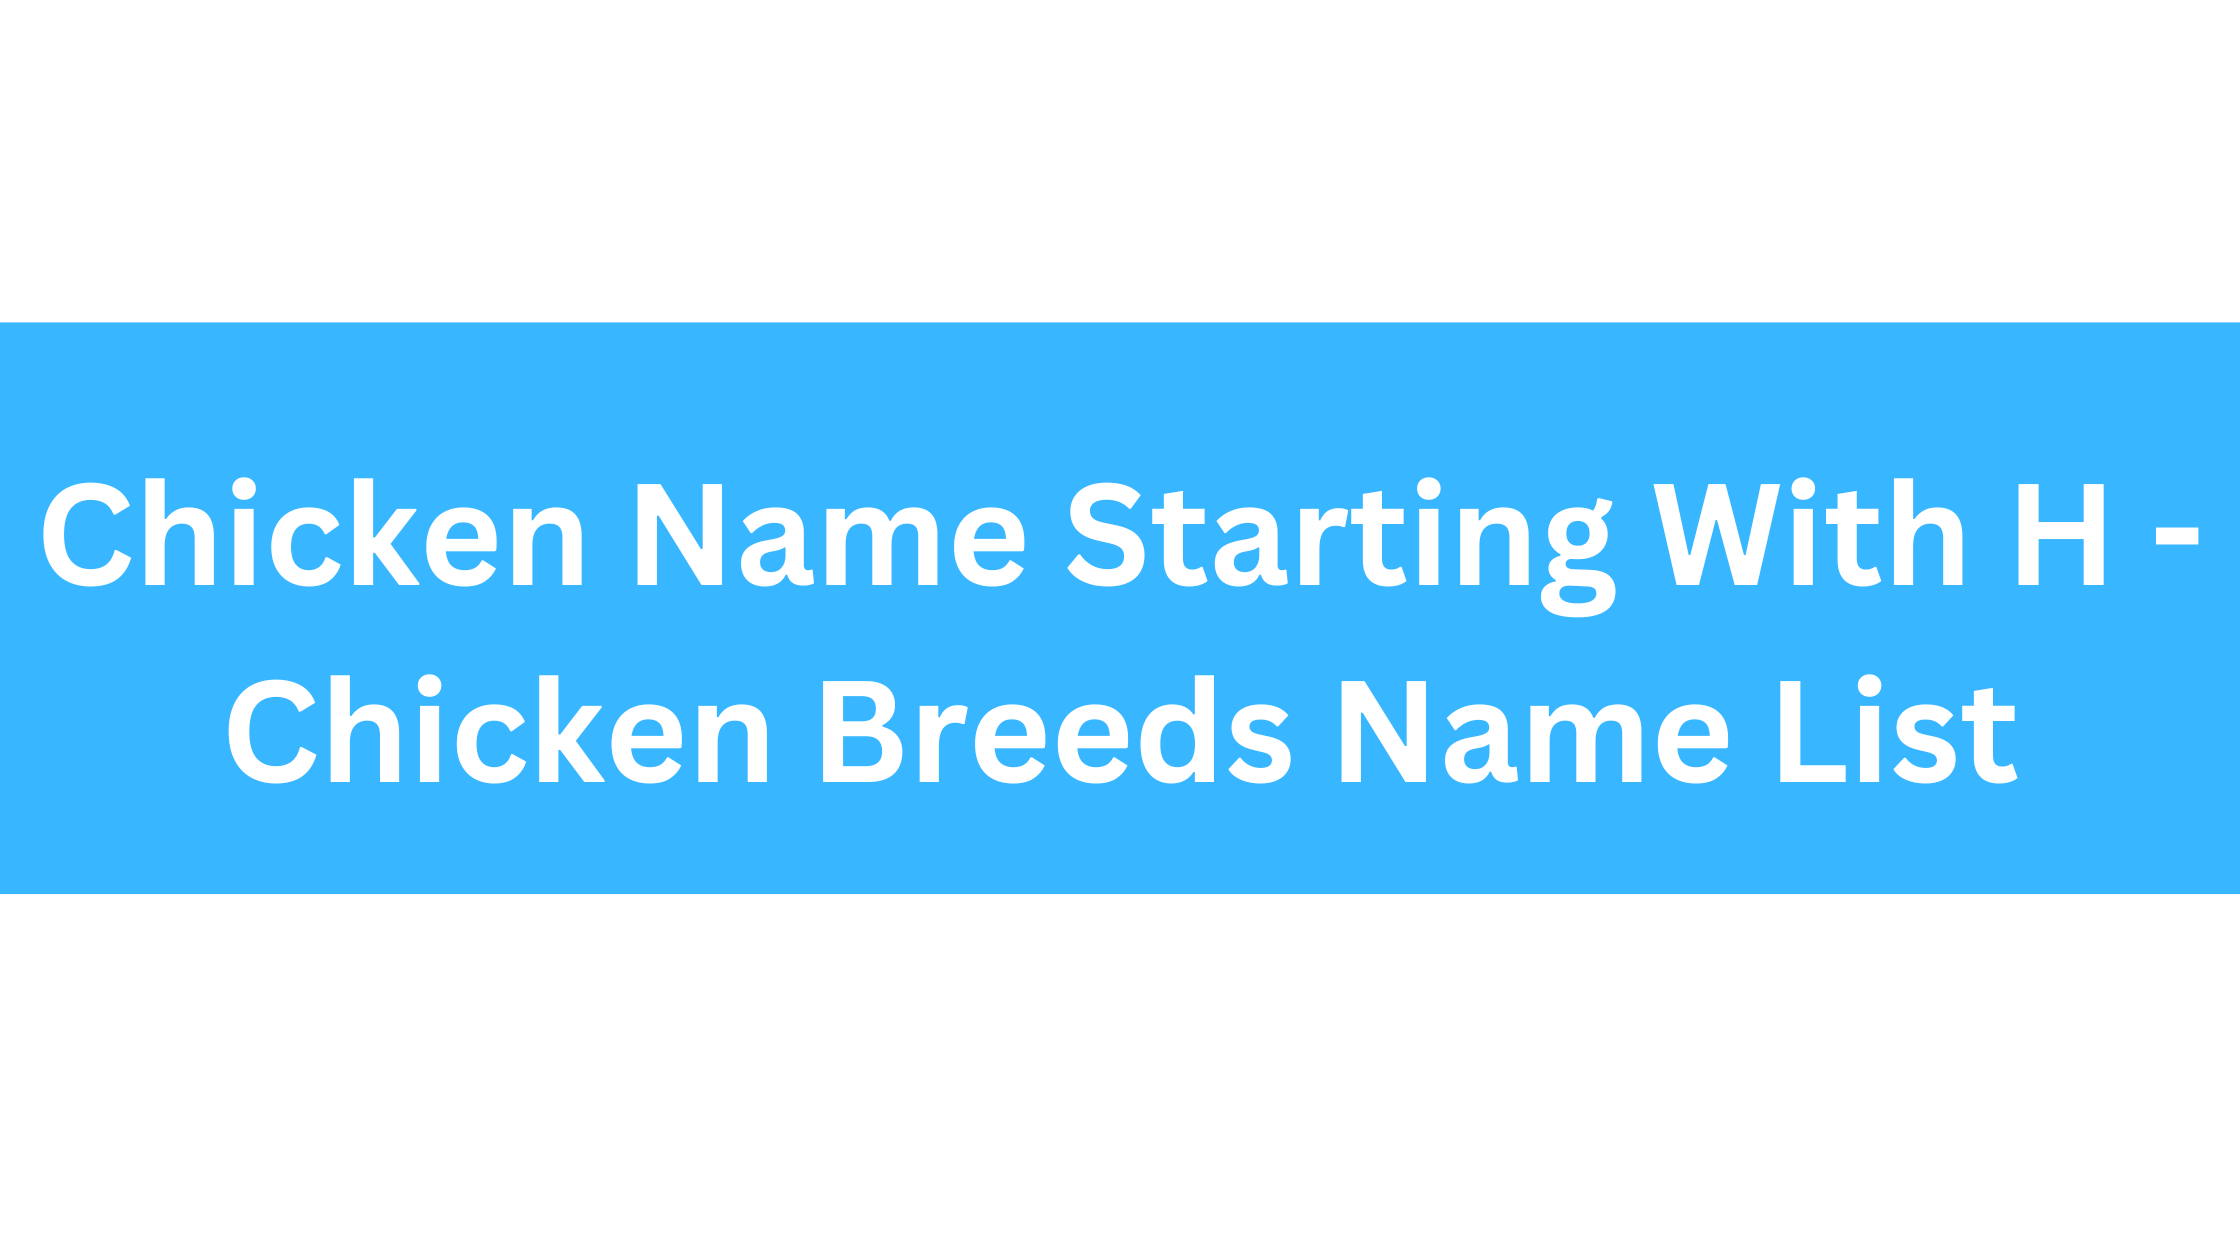 Chicken Breeds That Start With H